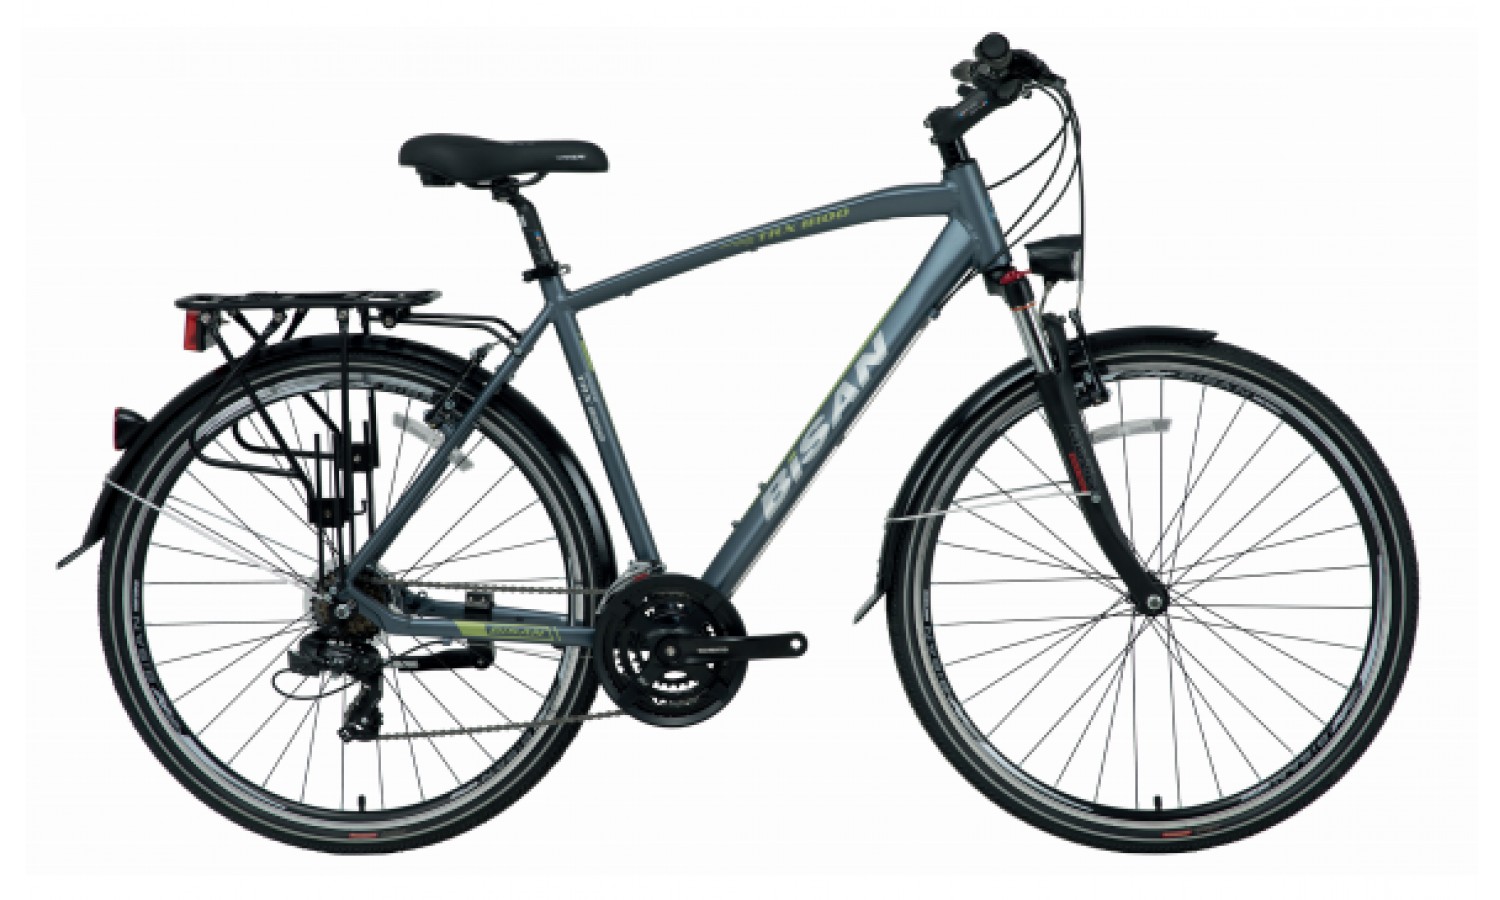 Bisan Trx 8100 City 28 V Trekking Bisiklet (Gri-Siyah)